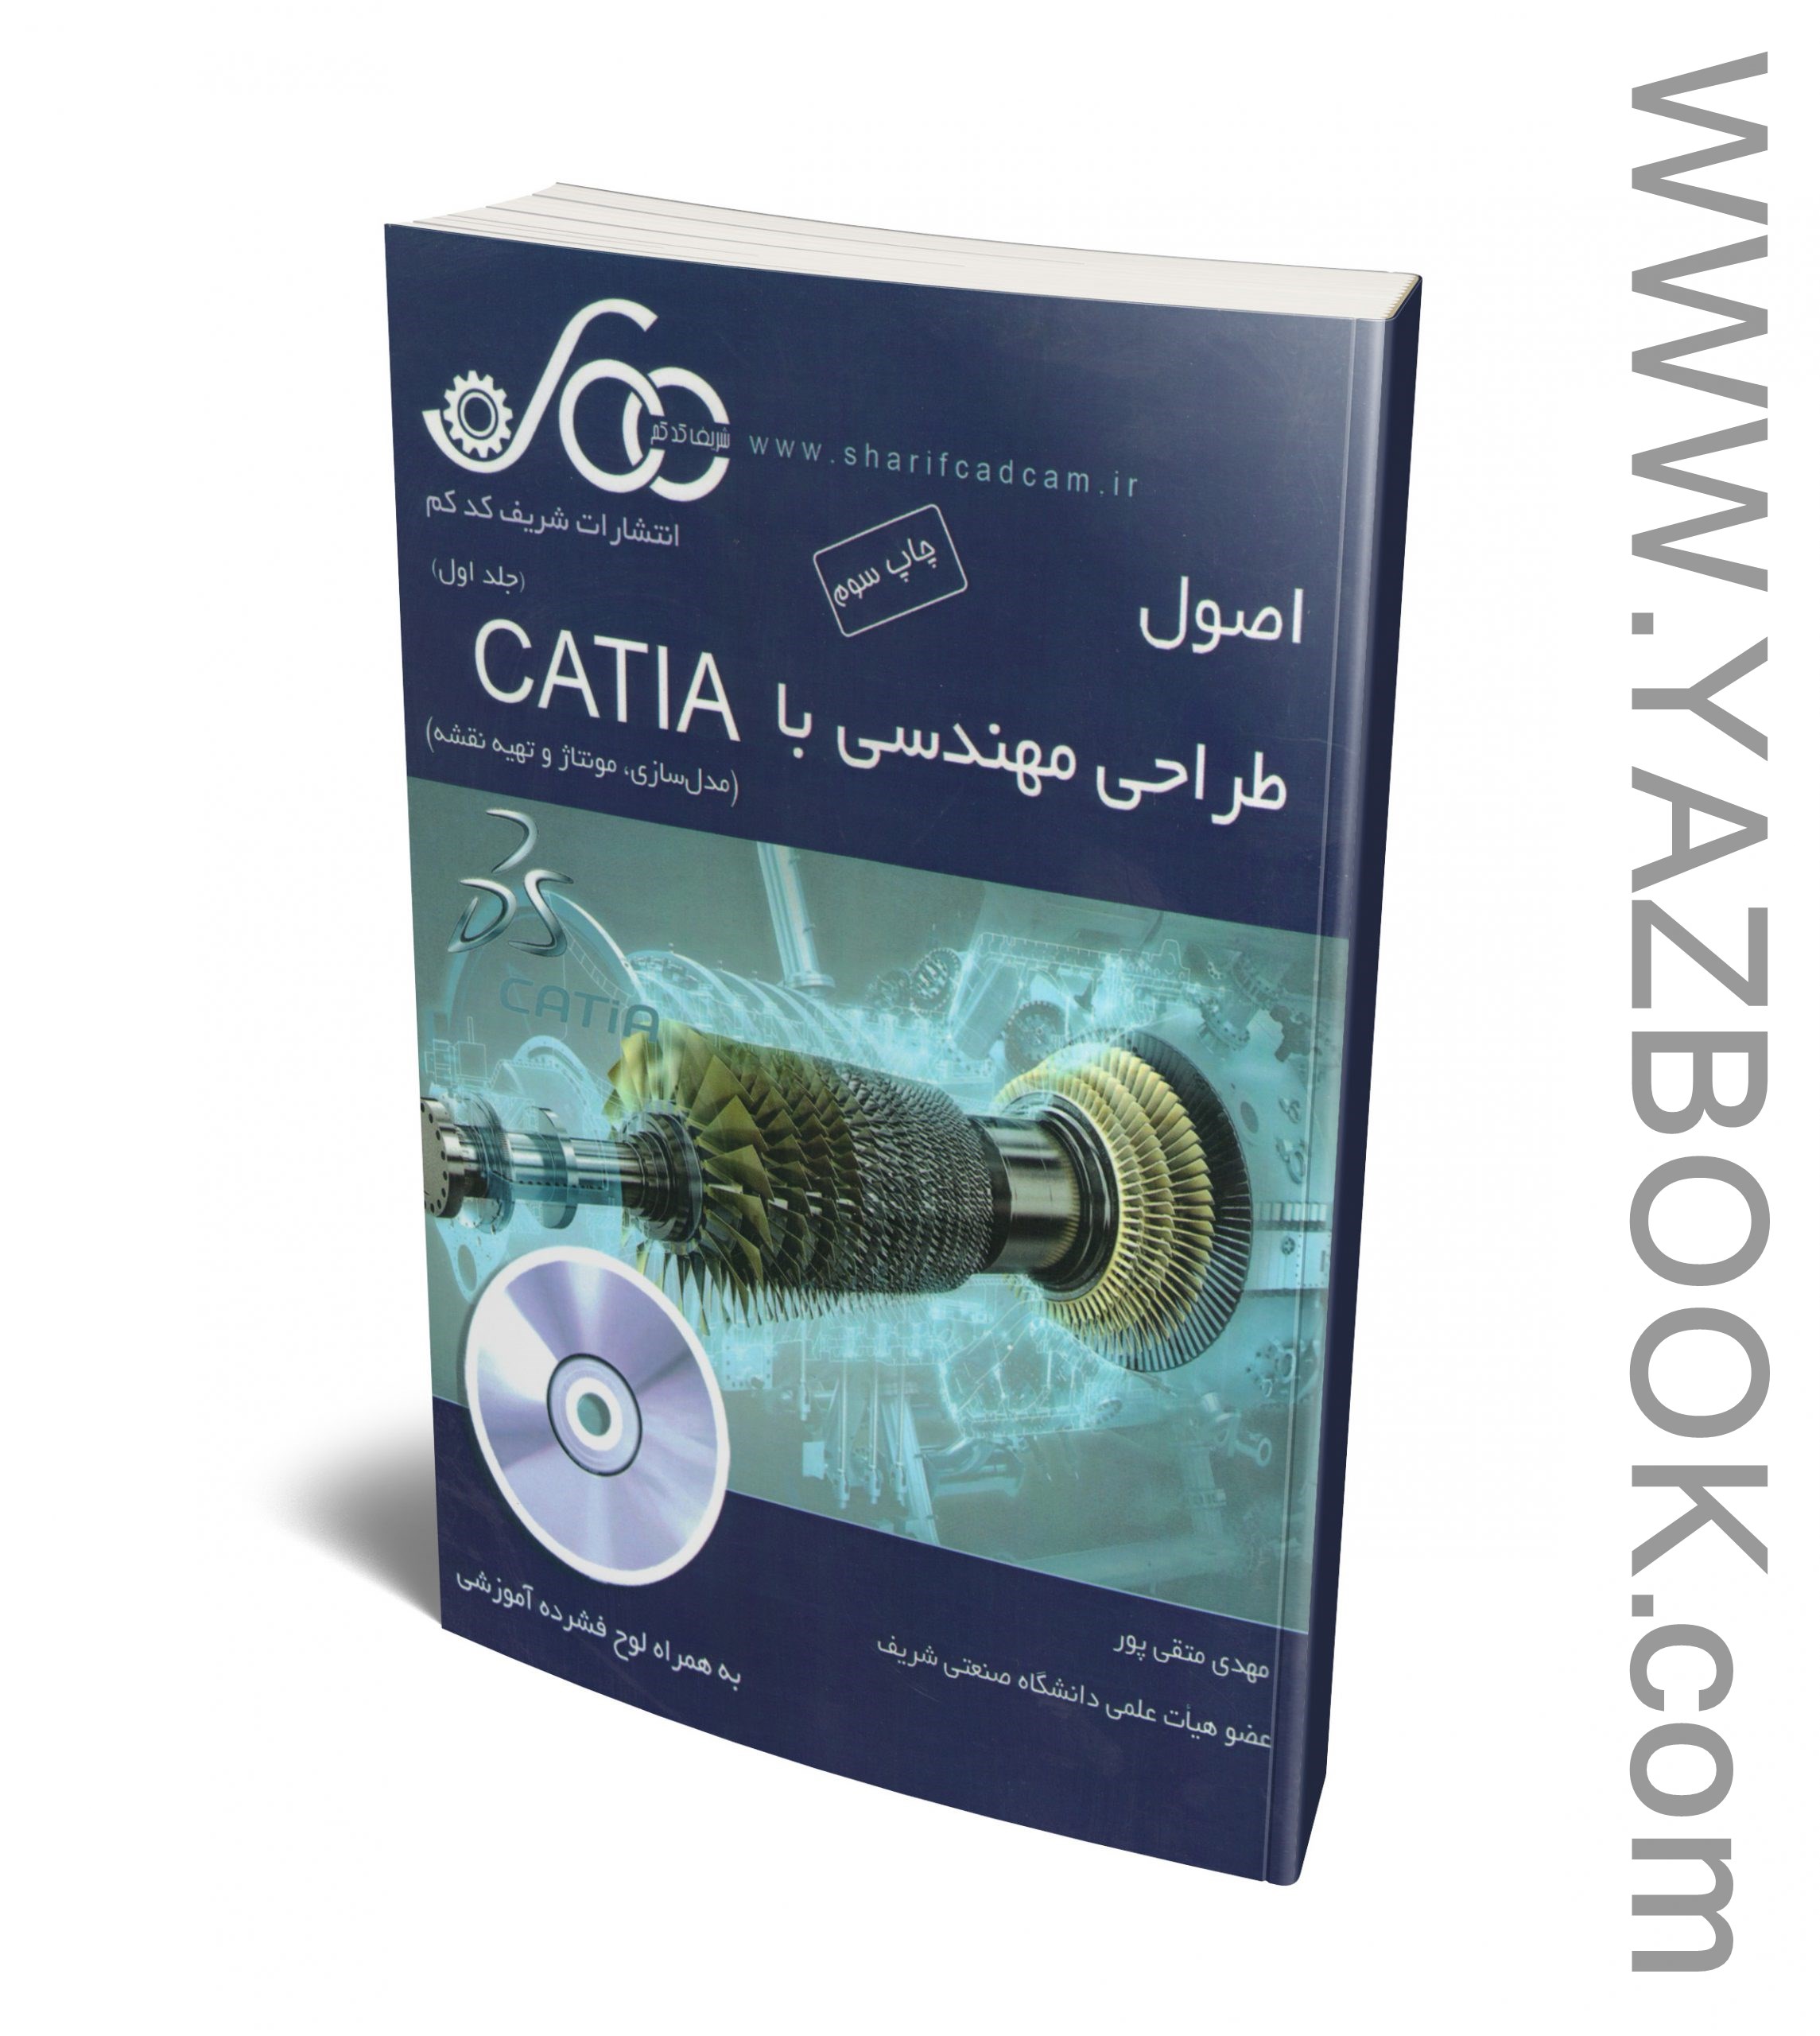 اصول طراحی مهندسی با catia(ج1)(متقی پور)